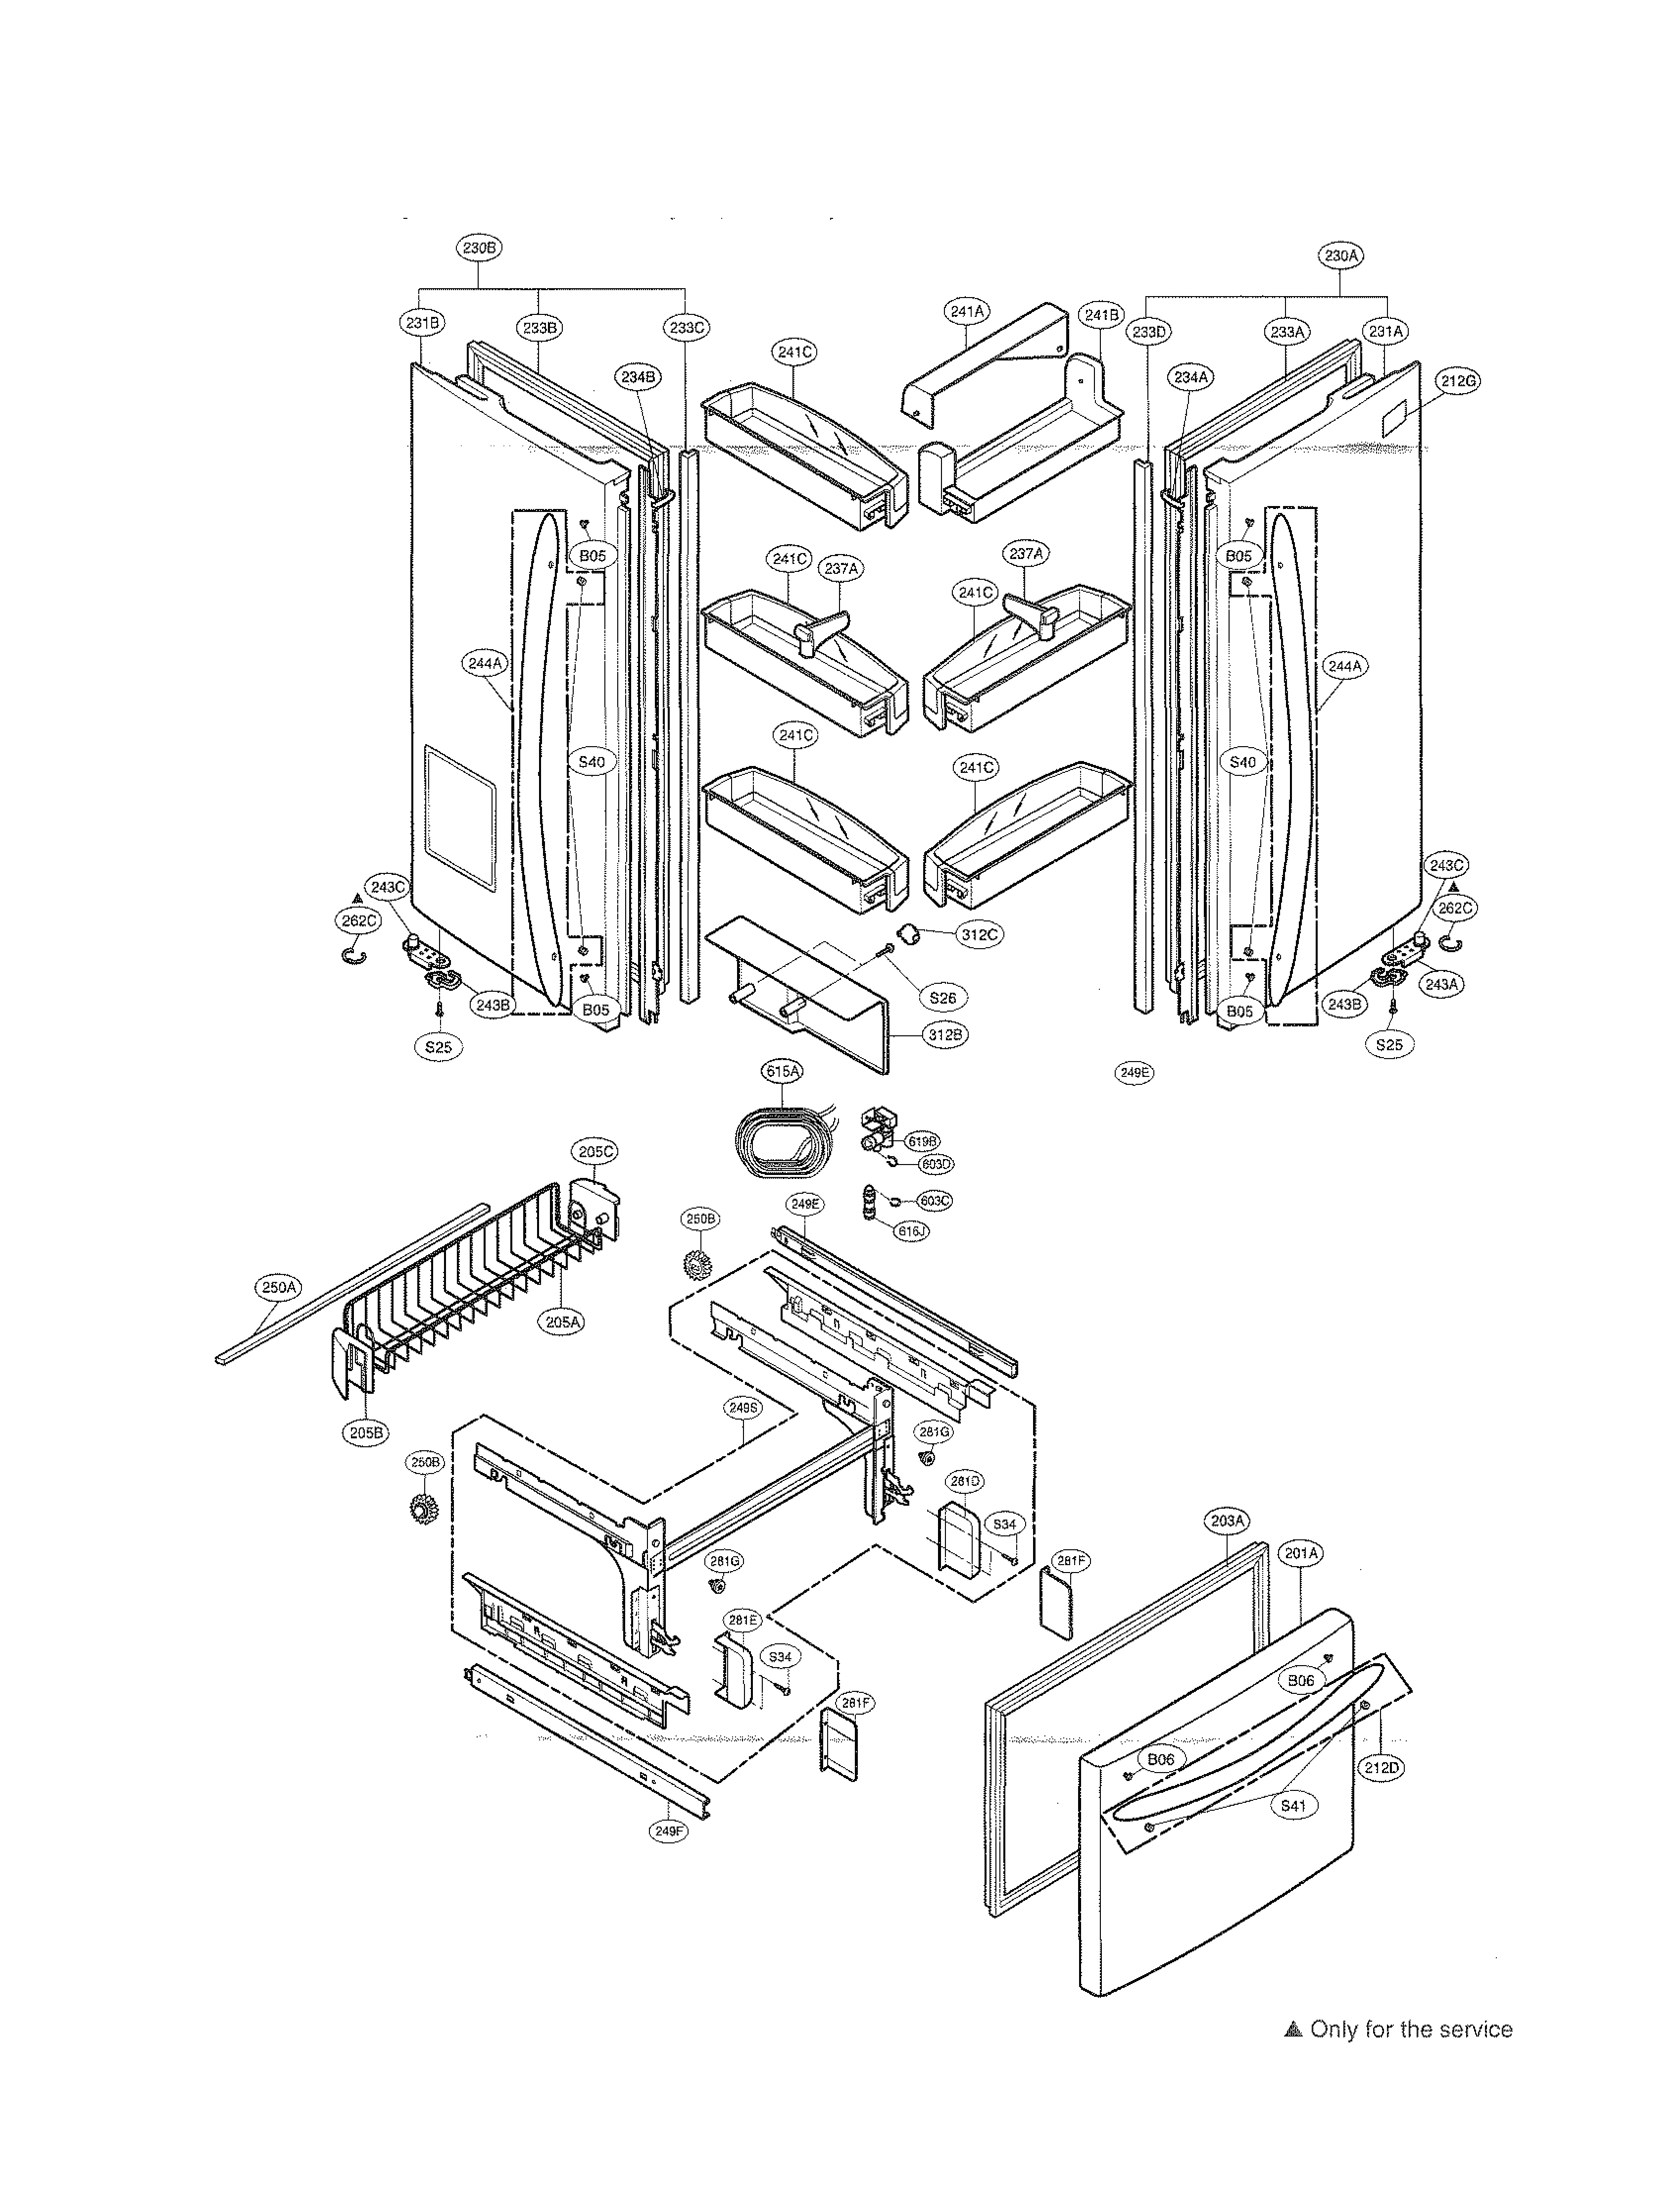 Refrigerator Partse: Parts Manual For Kenmore Refrigerator